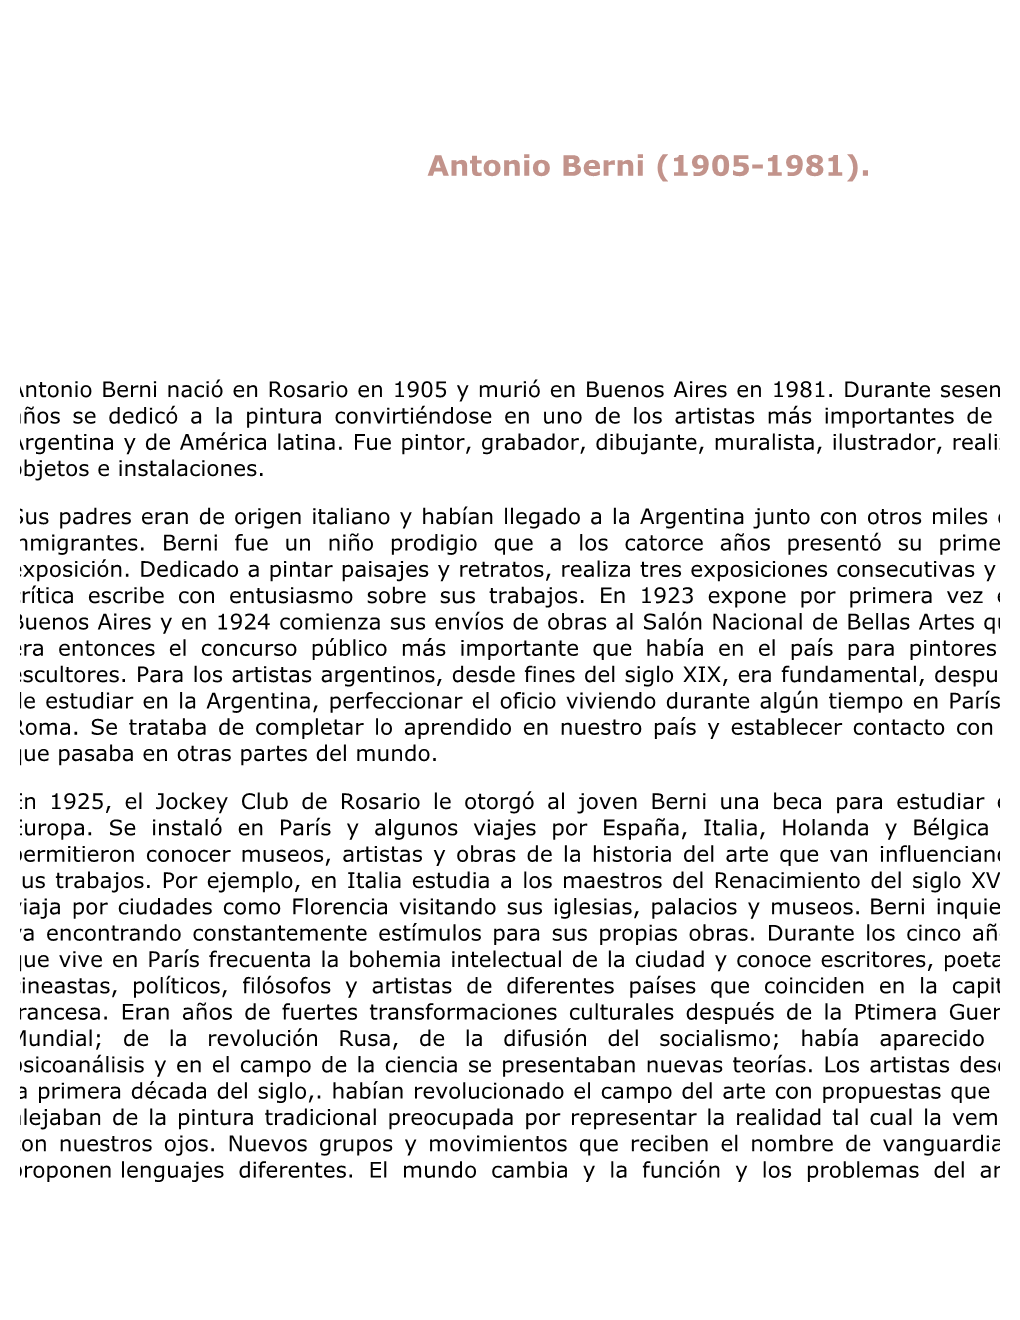 Antonio Berni (1905-1981)